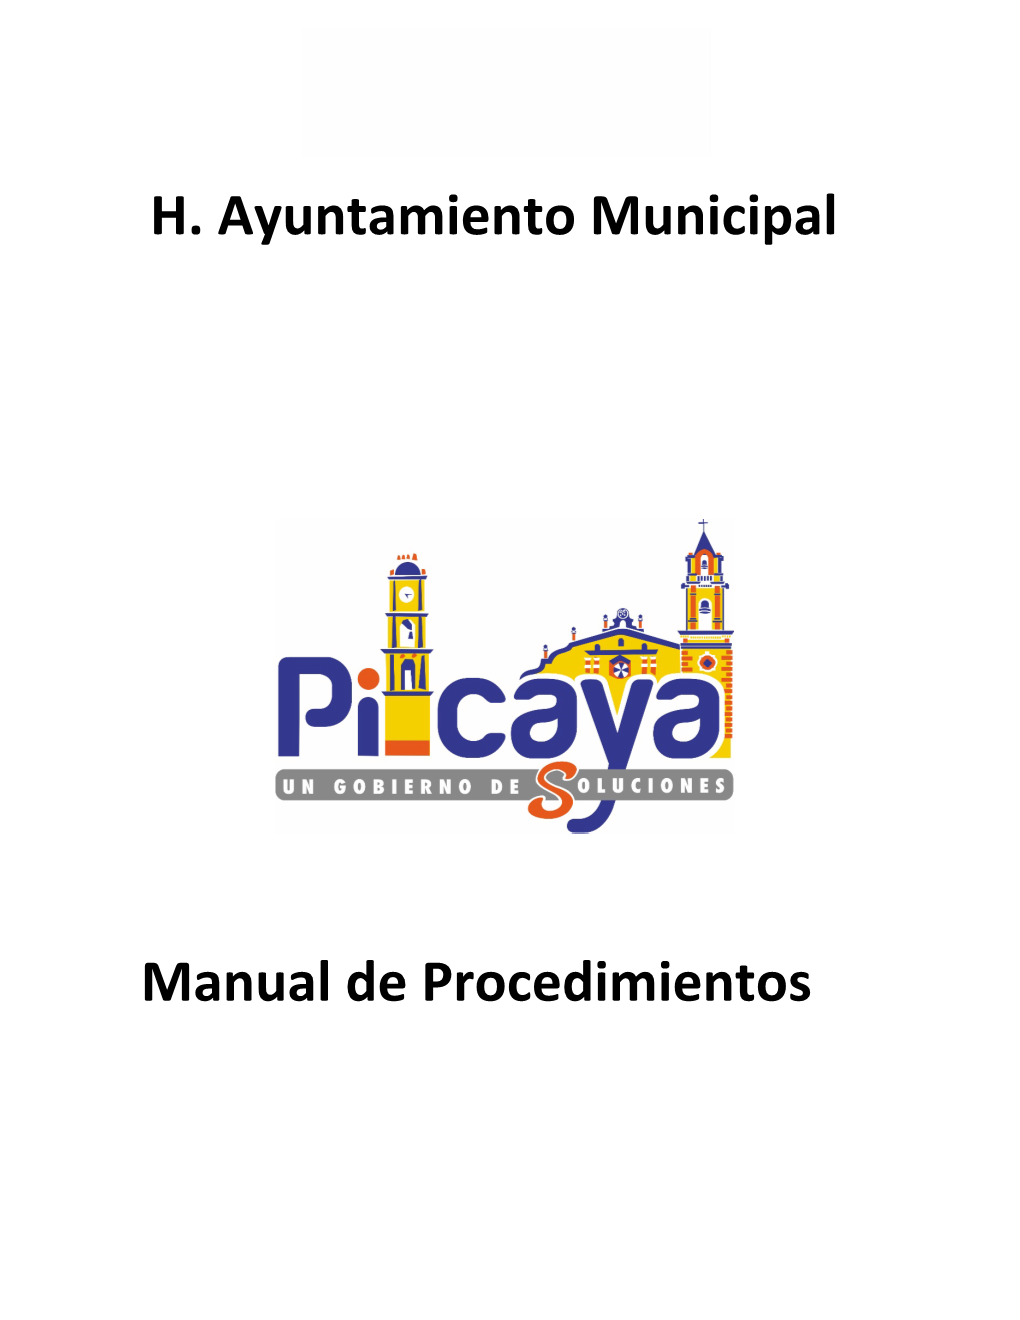 H. Ayuntamiento Municipal Manual De Procedimientos